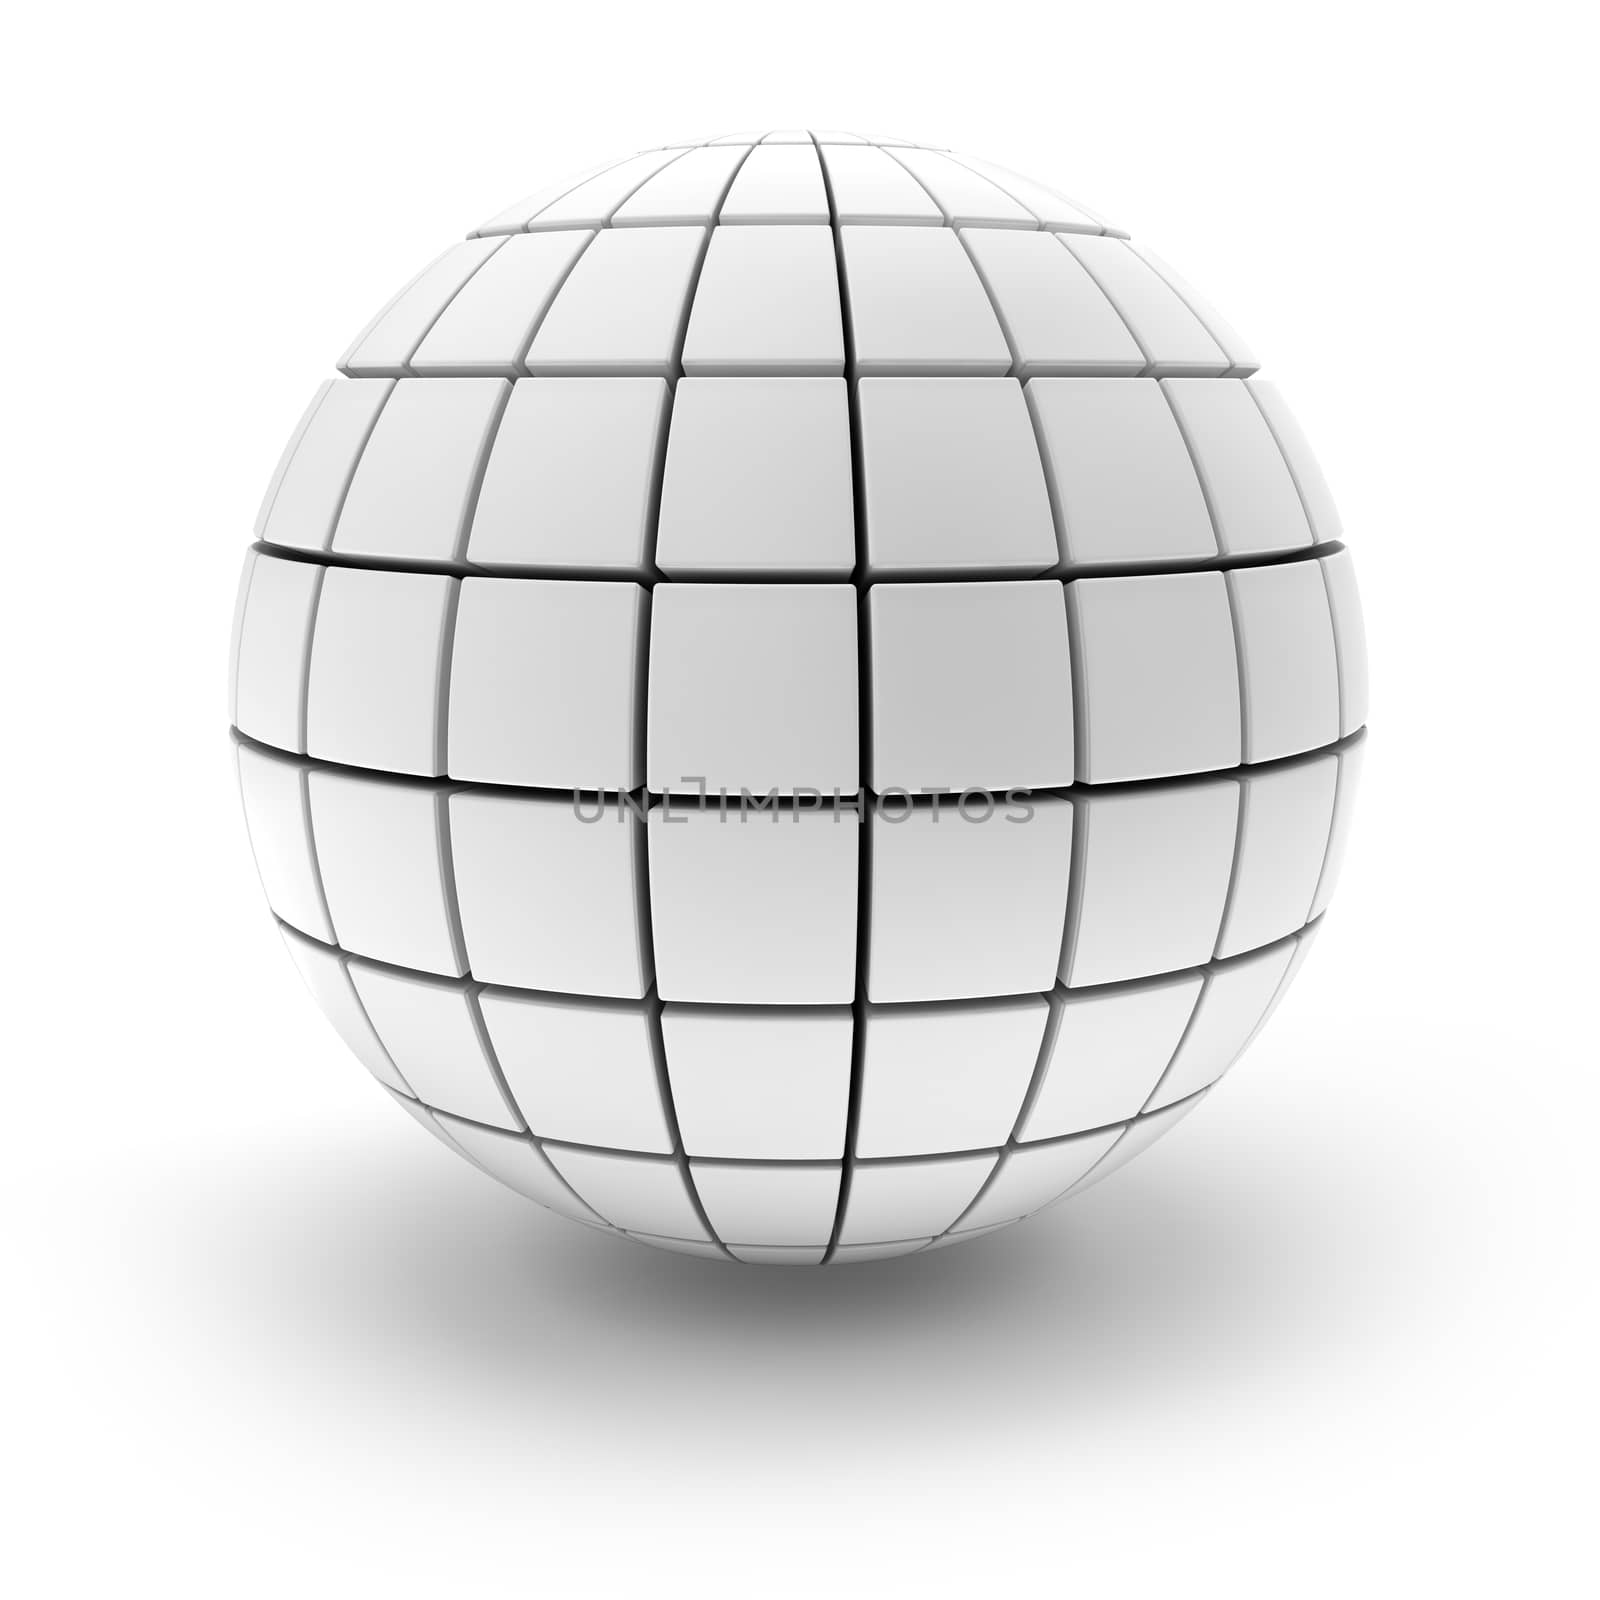 Blank sphere formed by blocks, 3d render by ymgerman